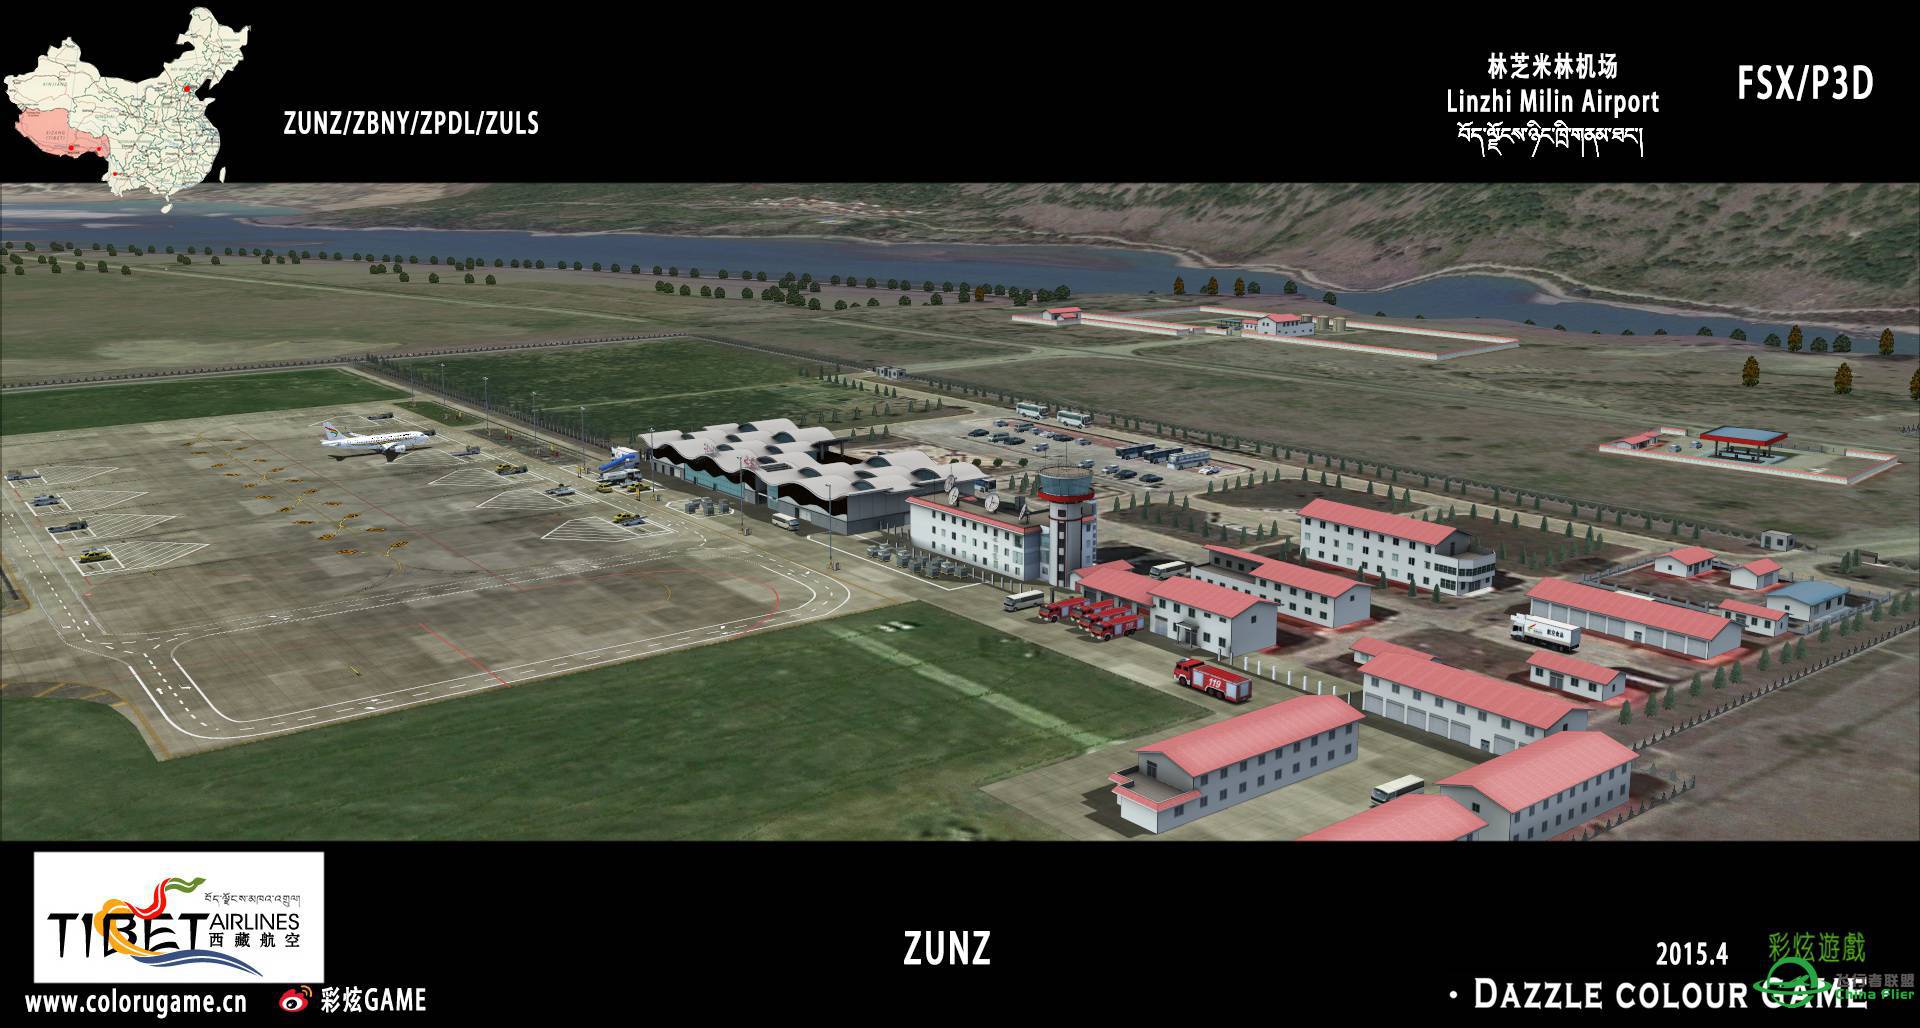 彩炫地景：林芝米林机场（ZUNZ）正式发布！-9785 